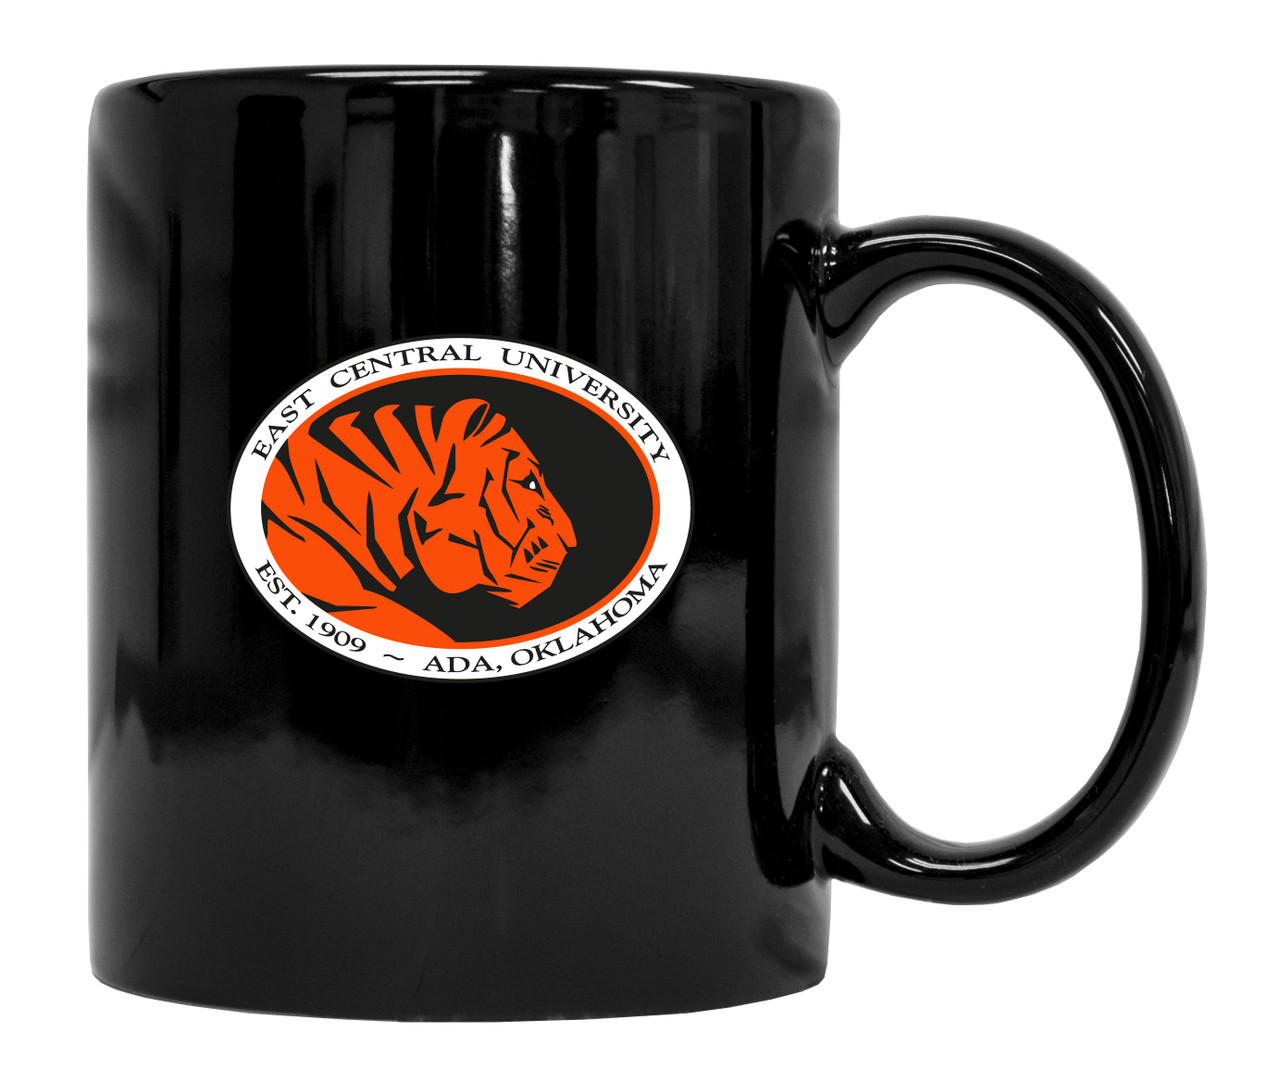 East Central University Tigers Black Ceramic Mug 2-Pack (Black).